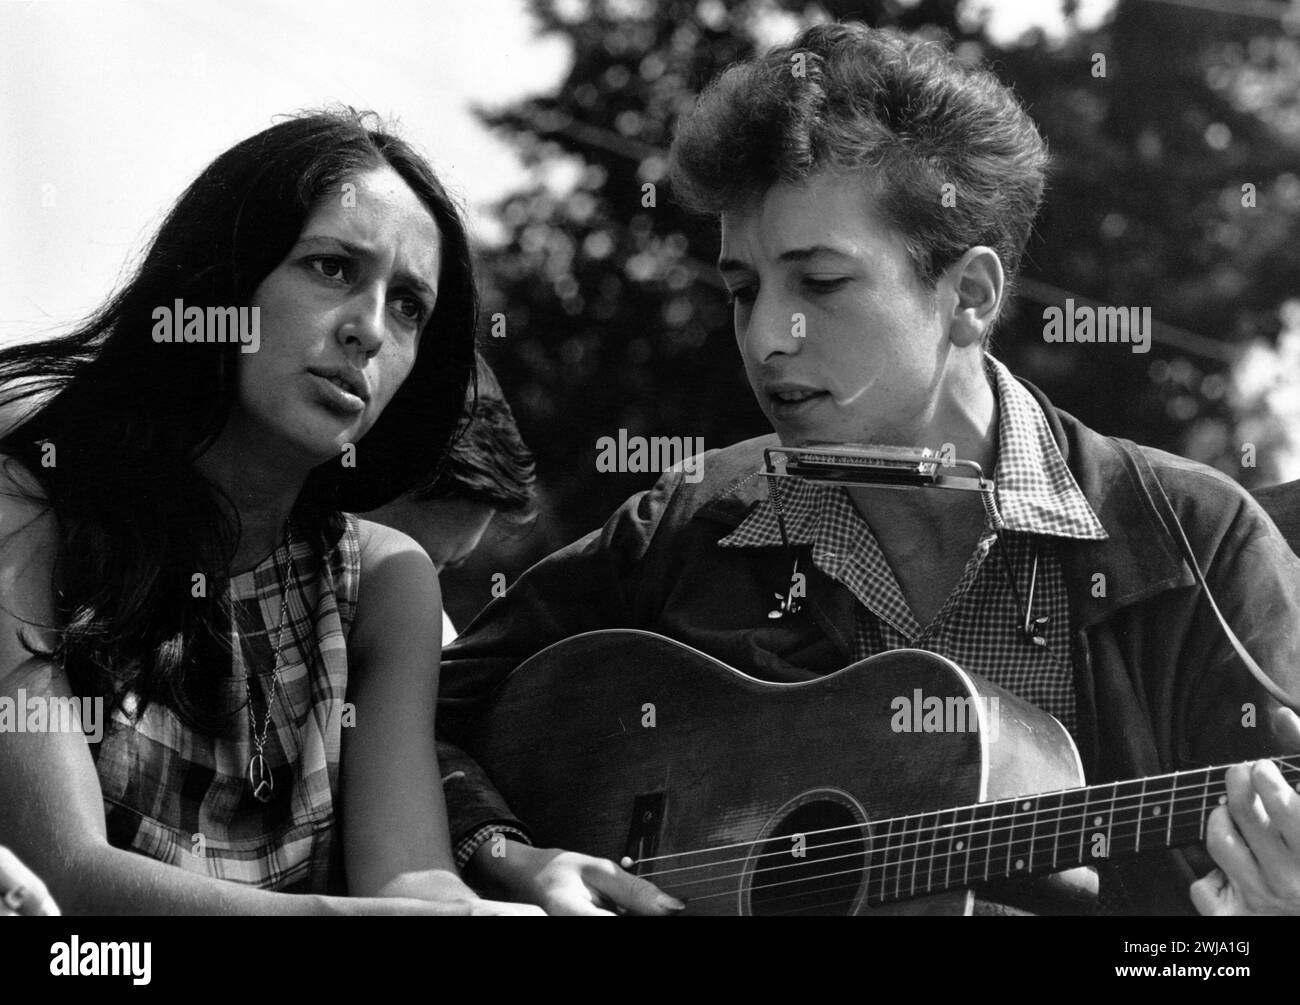 Marche des droits civiques sur Washington, DC vue rapprochée des chanteurs Joan Baez et Bob Dylan août 28 1963 - photo de Rowland Scherman Banque D'Images